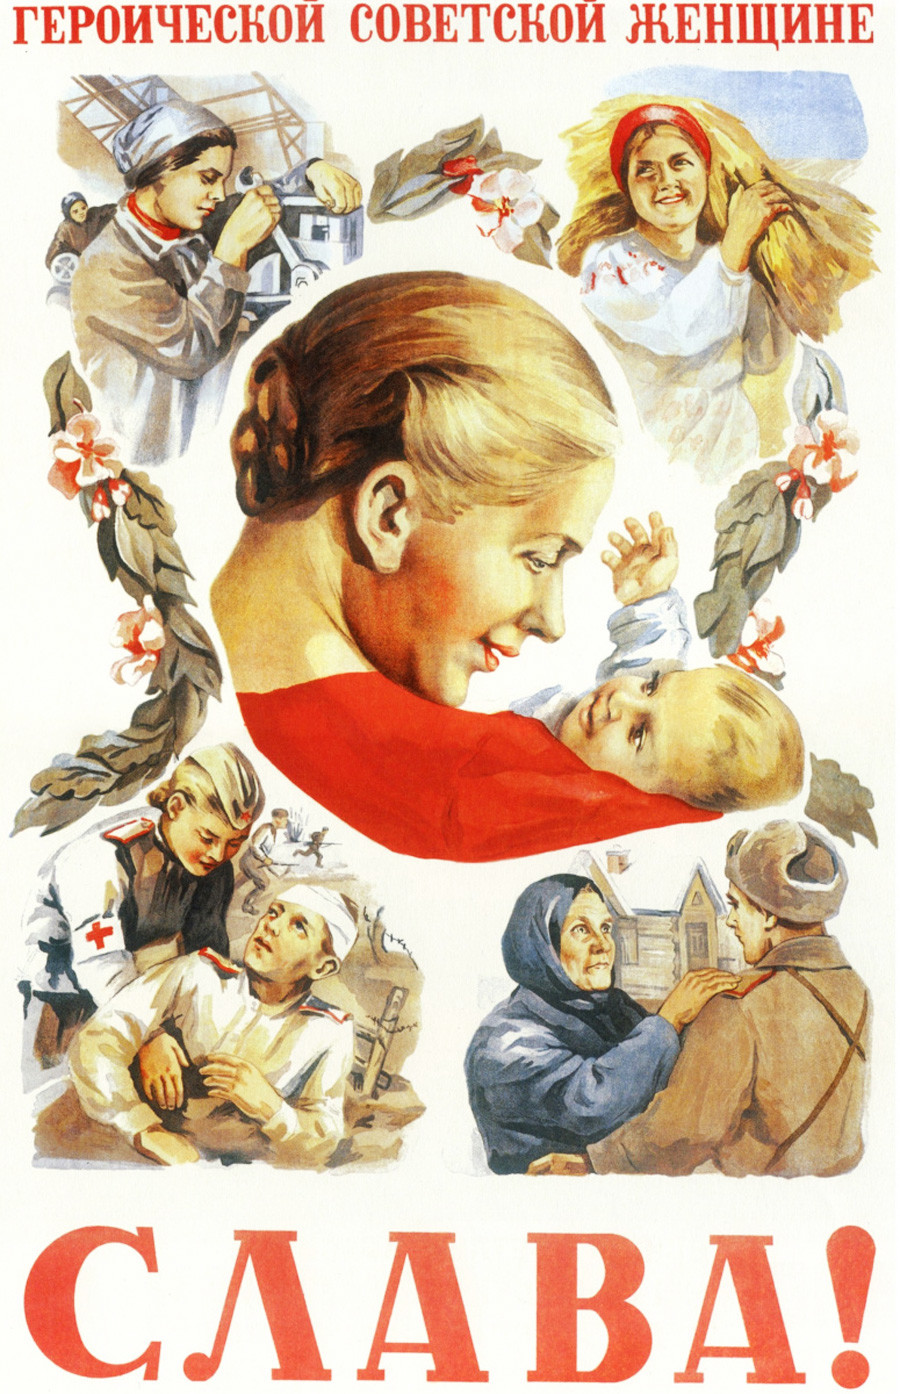 Slava herojski sovjetski ženski!